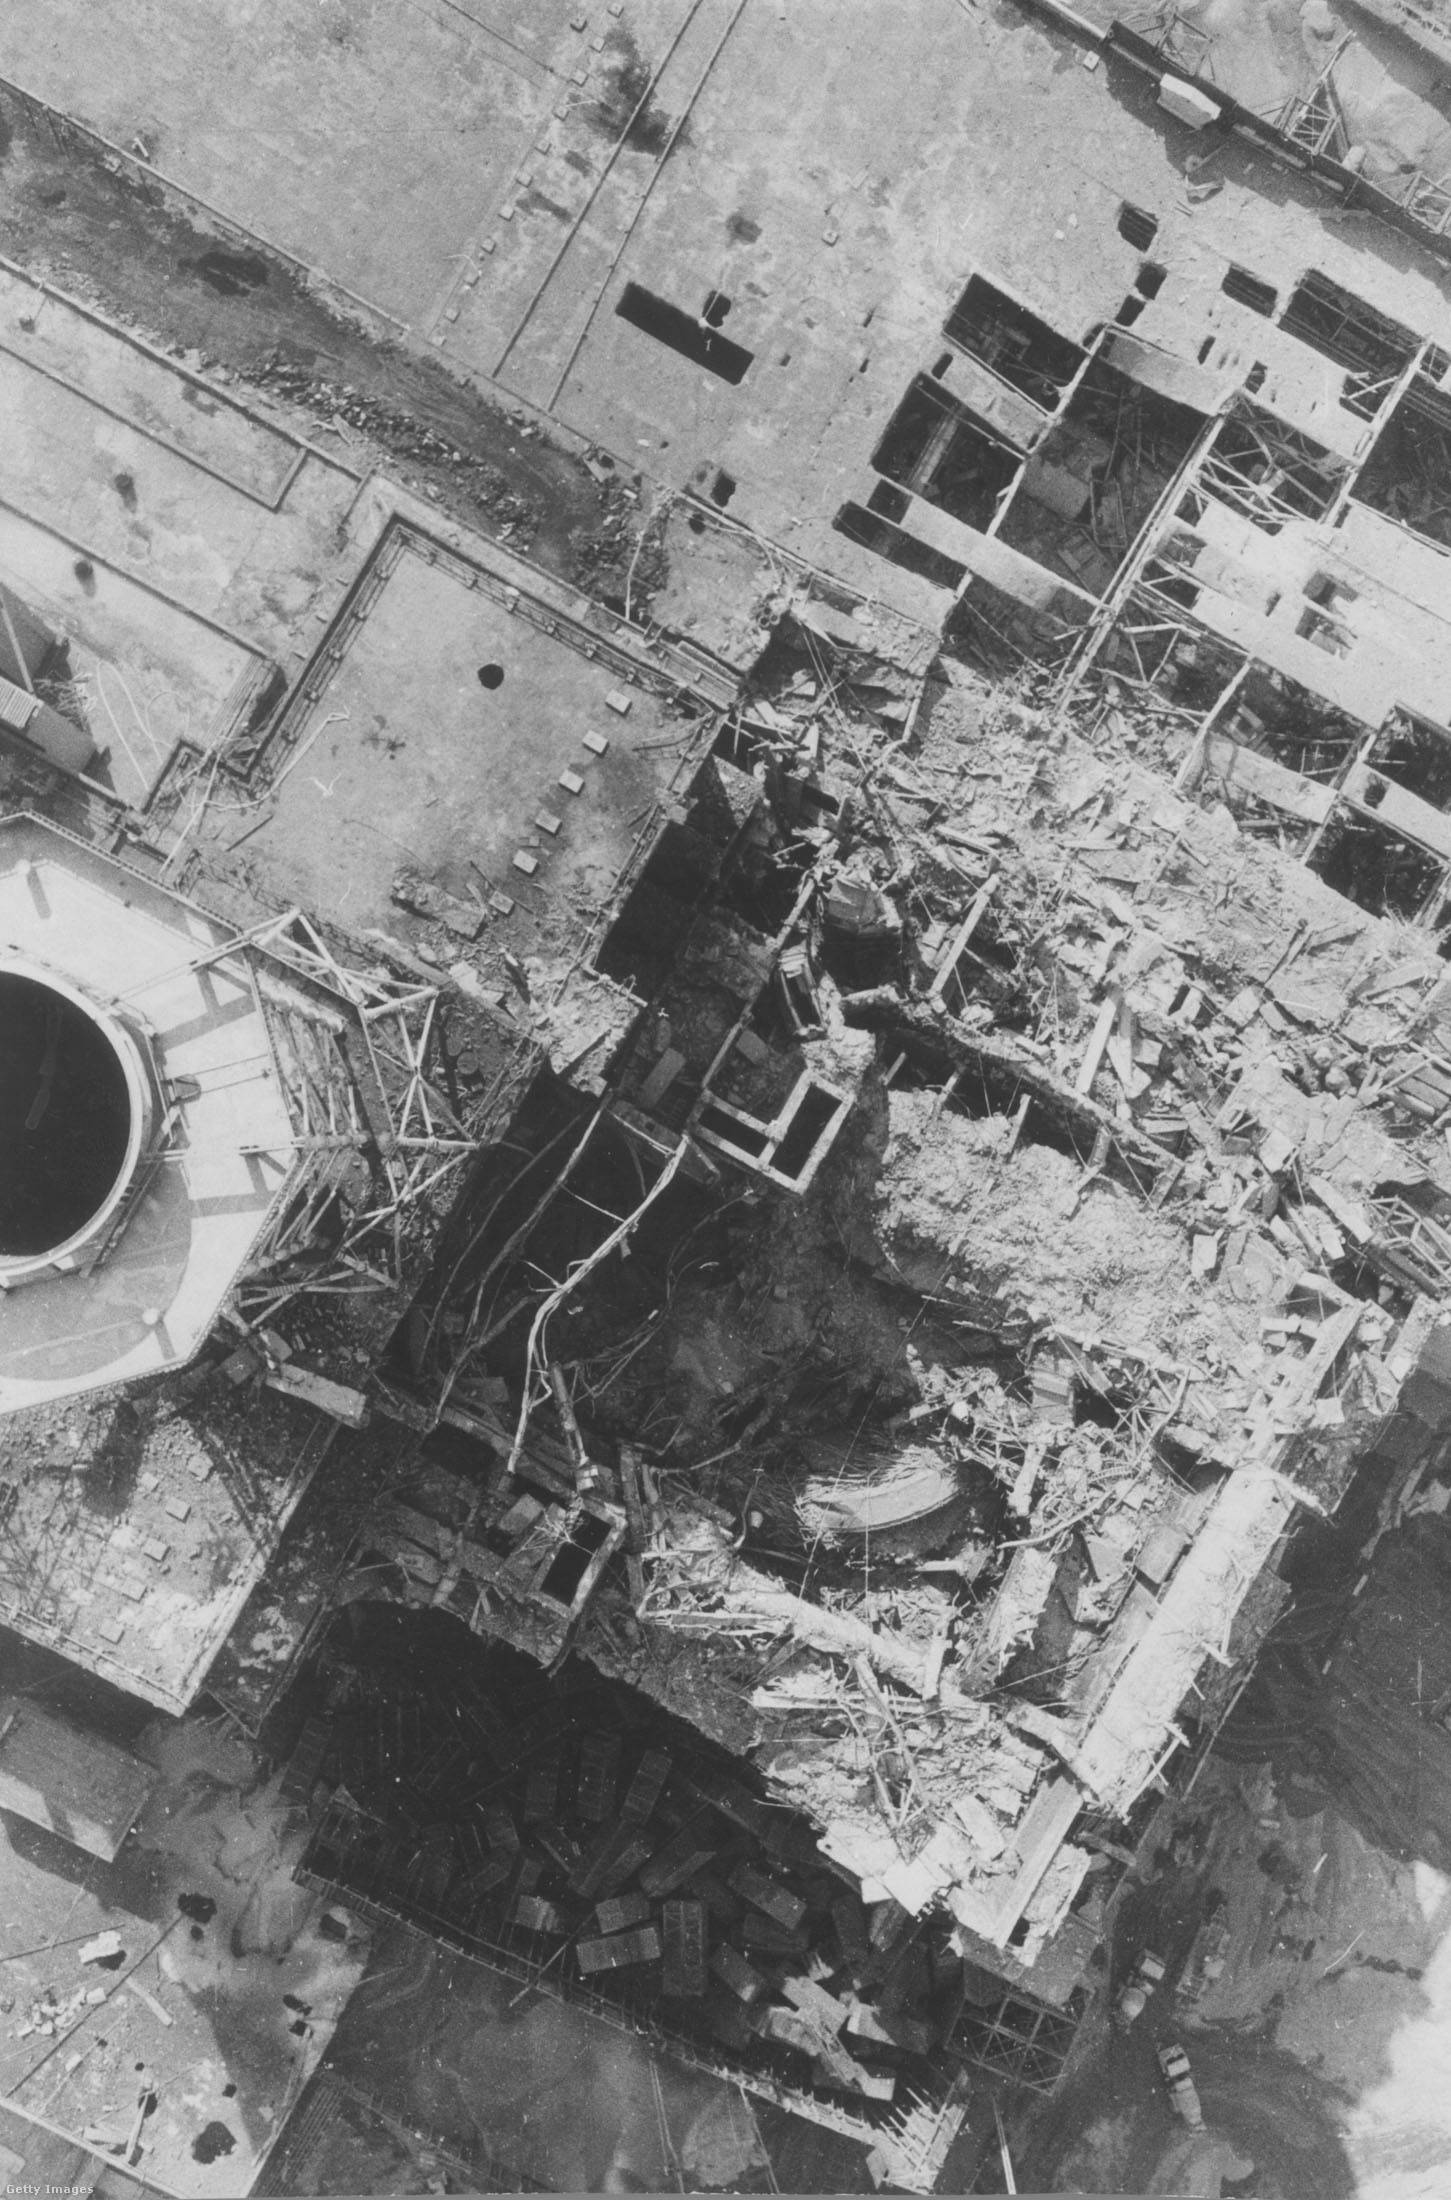 Ritkán látott fekete-fehér fotó a lerombolt reaktorról.